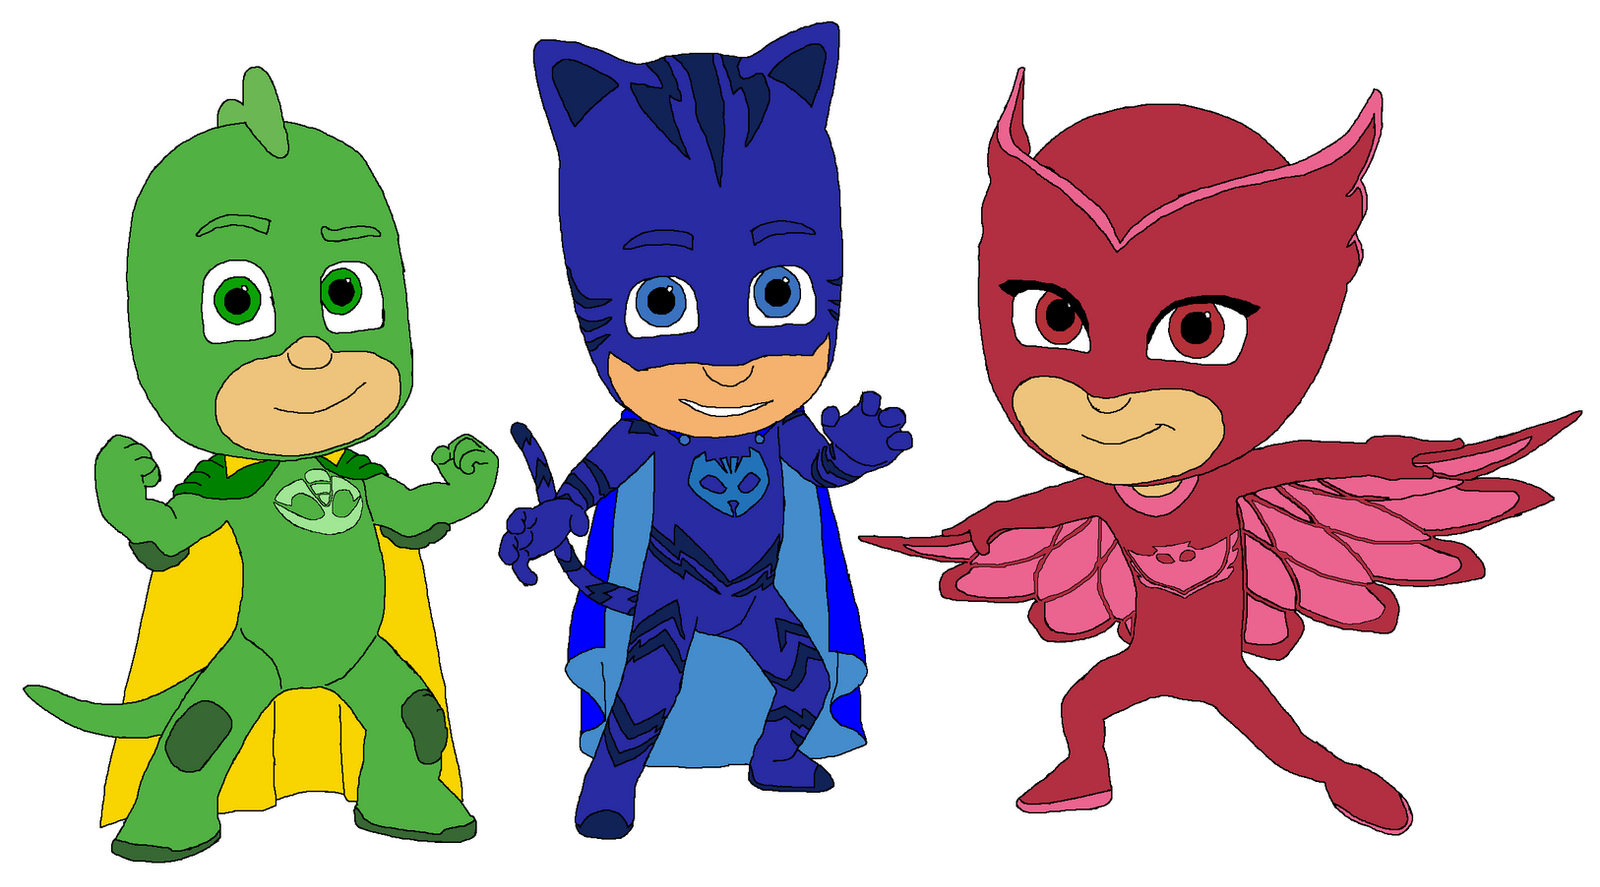 Uitstekers PJ Masks Catboy Owlette Gekko Mystery Solving Superheroes Pajama...